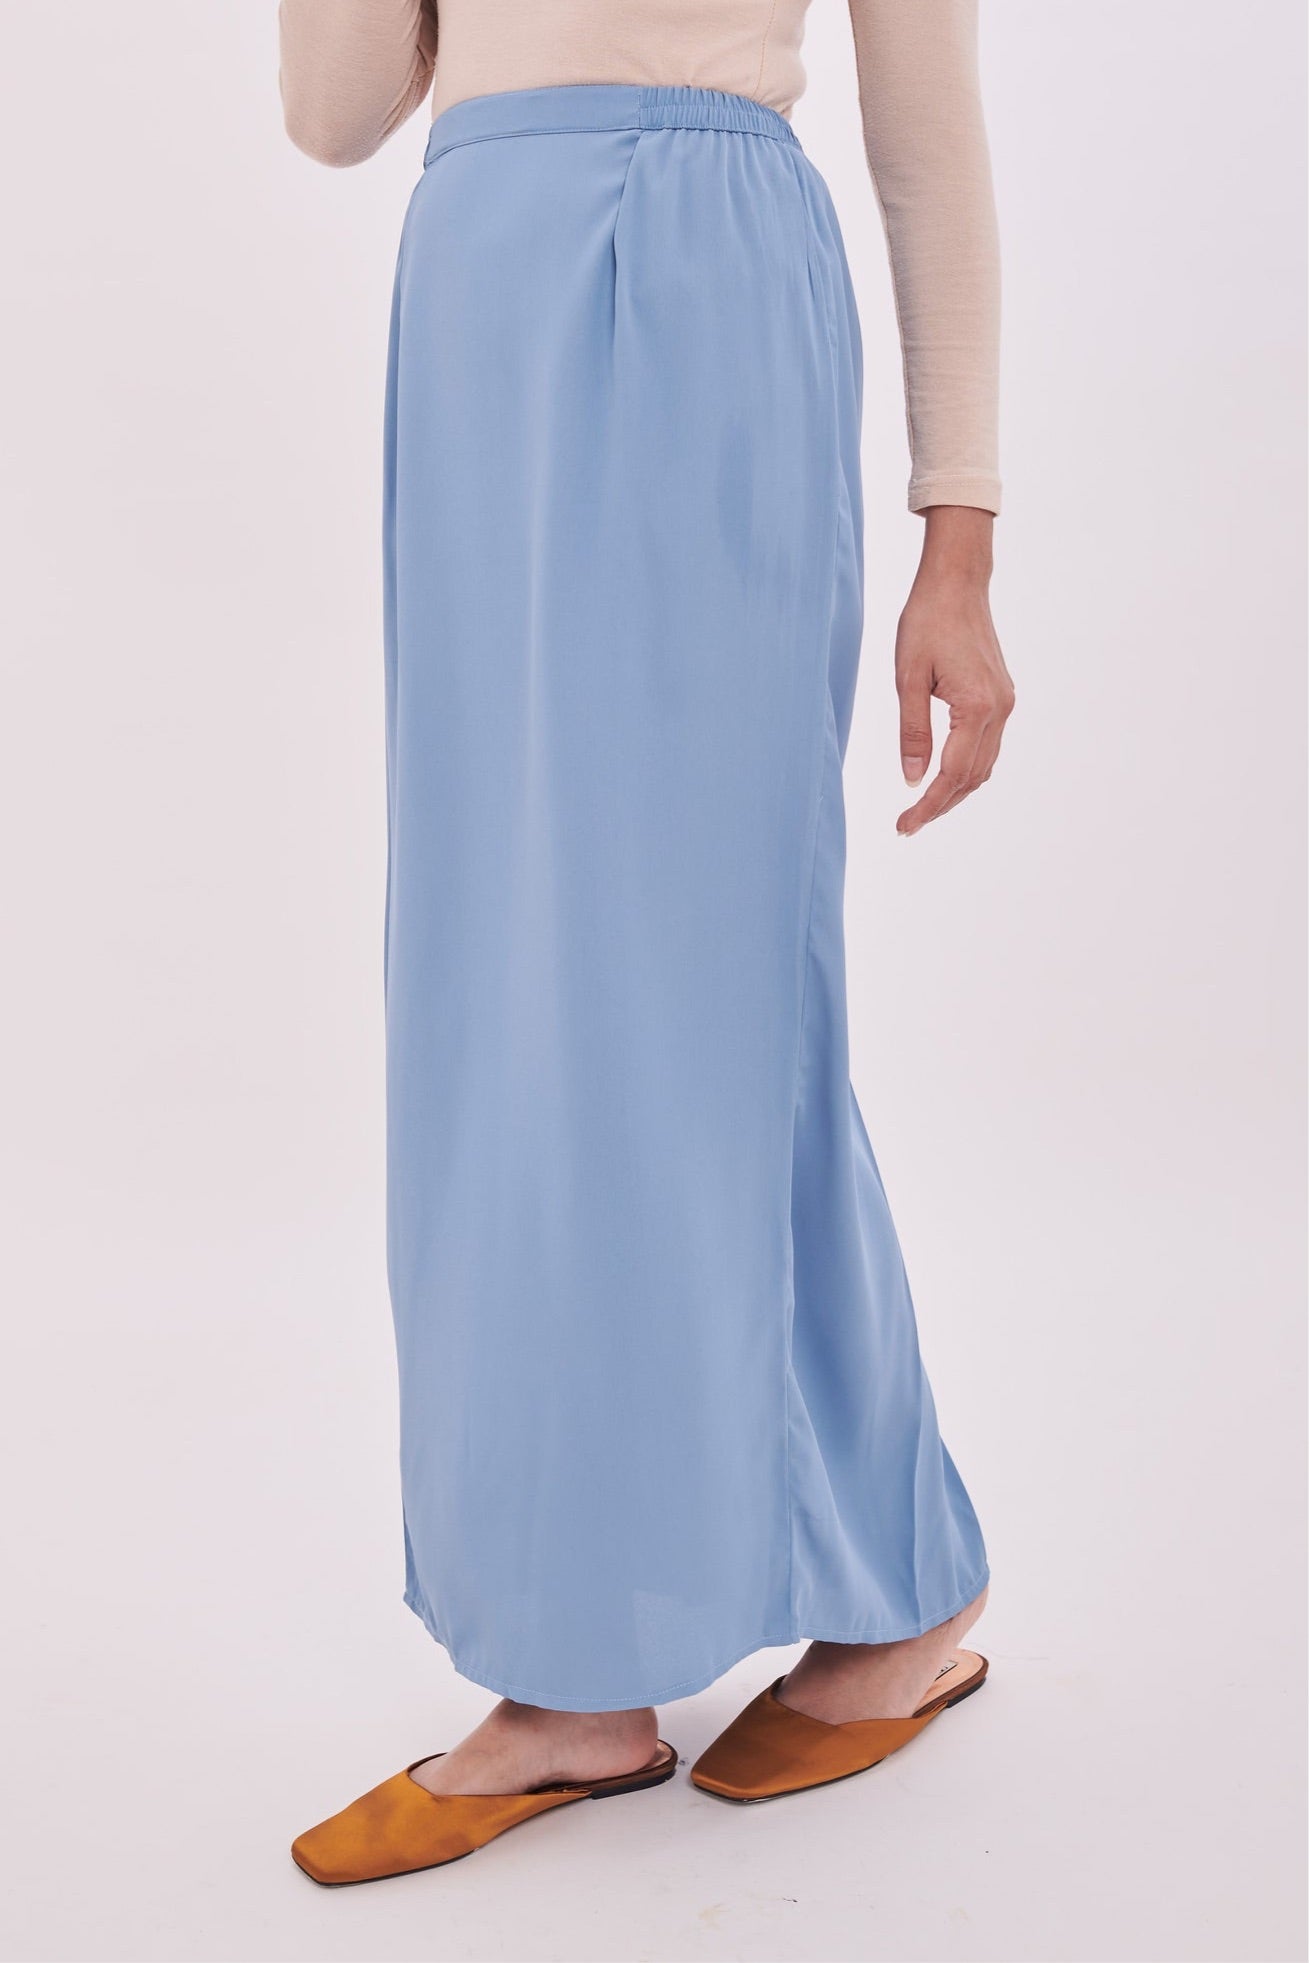 Edza Skirt in Stone Blue